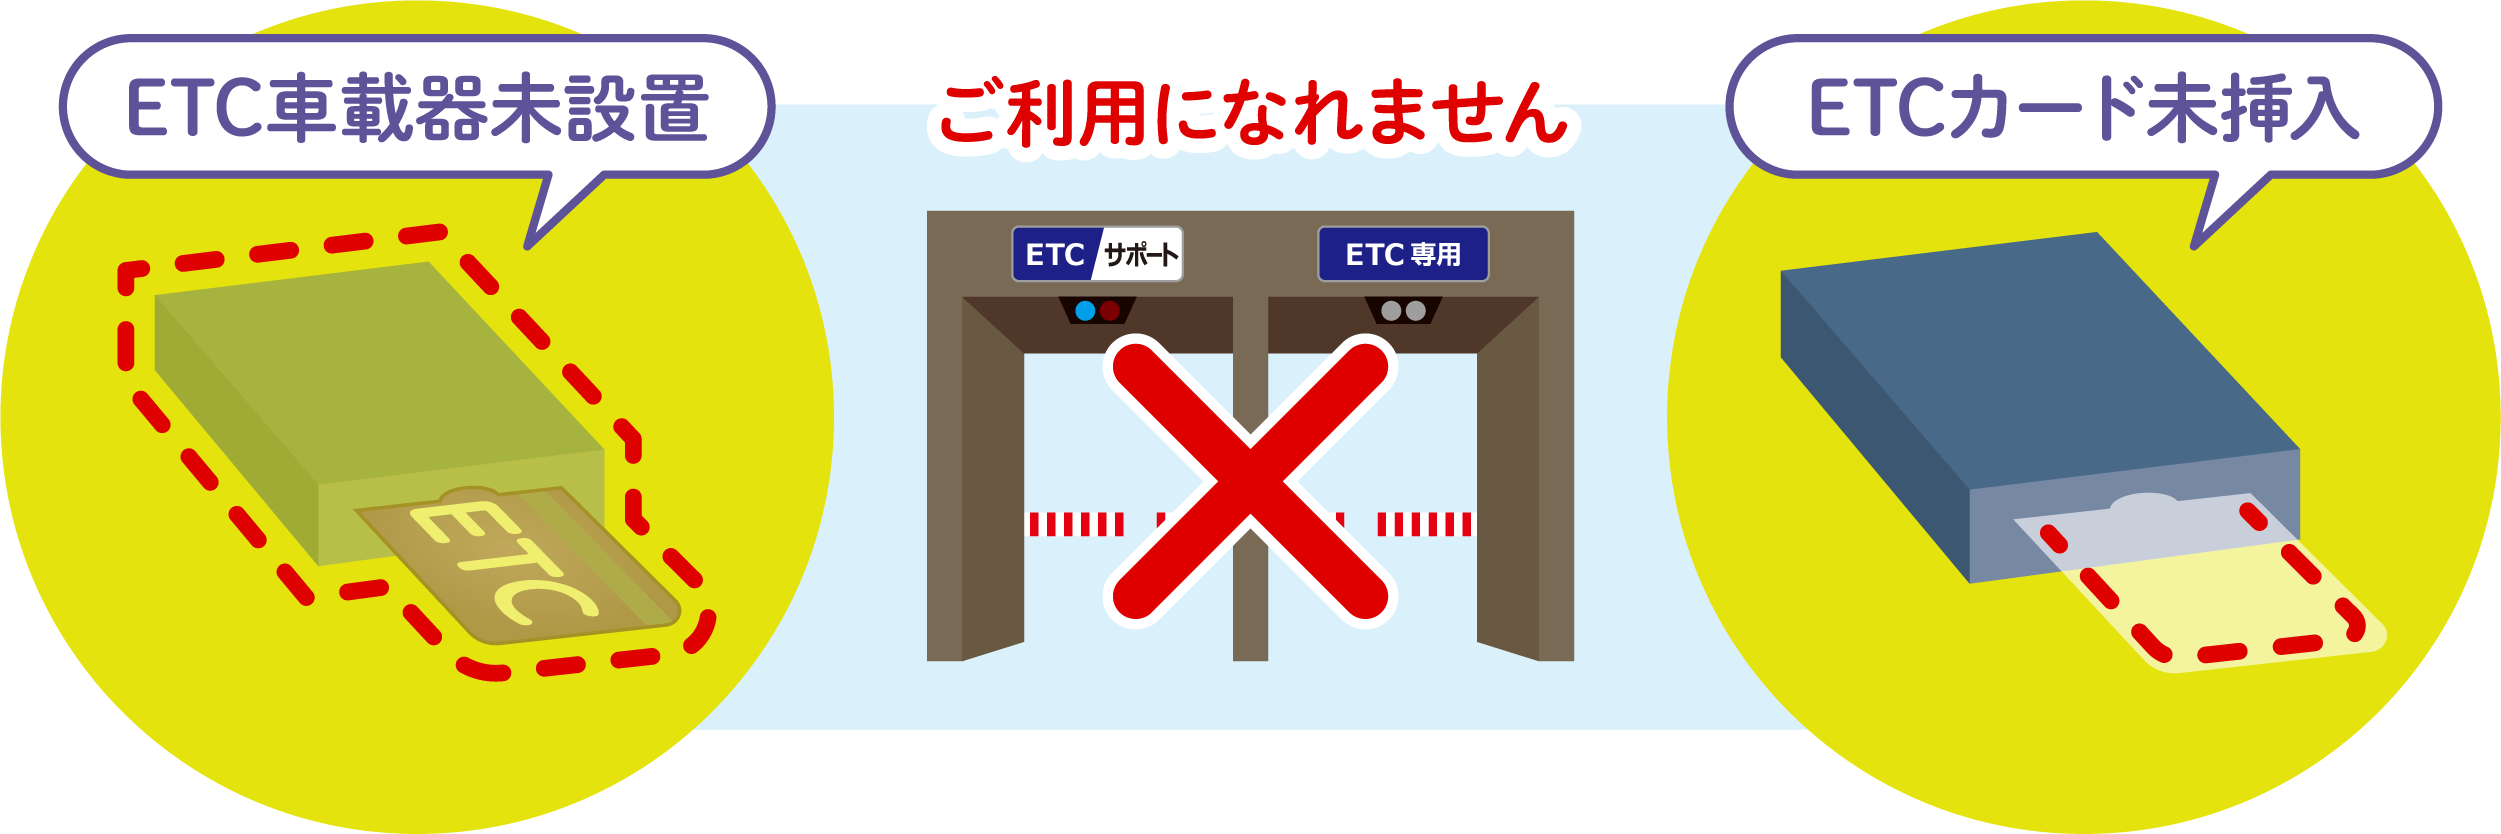 ETC専用料金所について ETC各種サービス ETC・割引案内 料金・交通 高速道路・高速情報はNEXCO 中日本